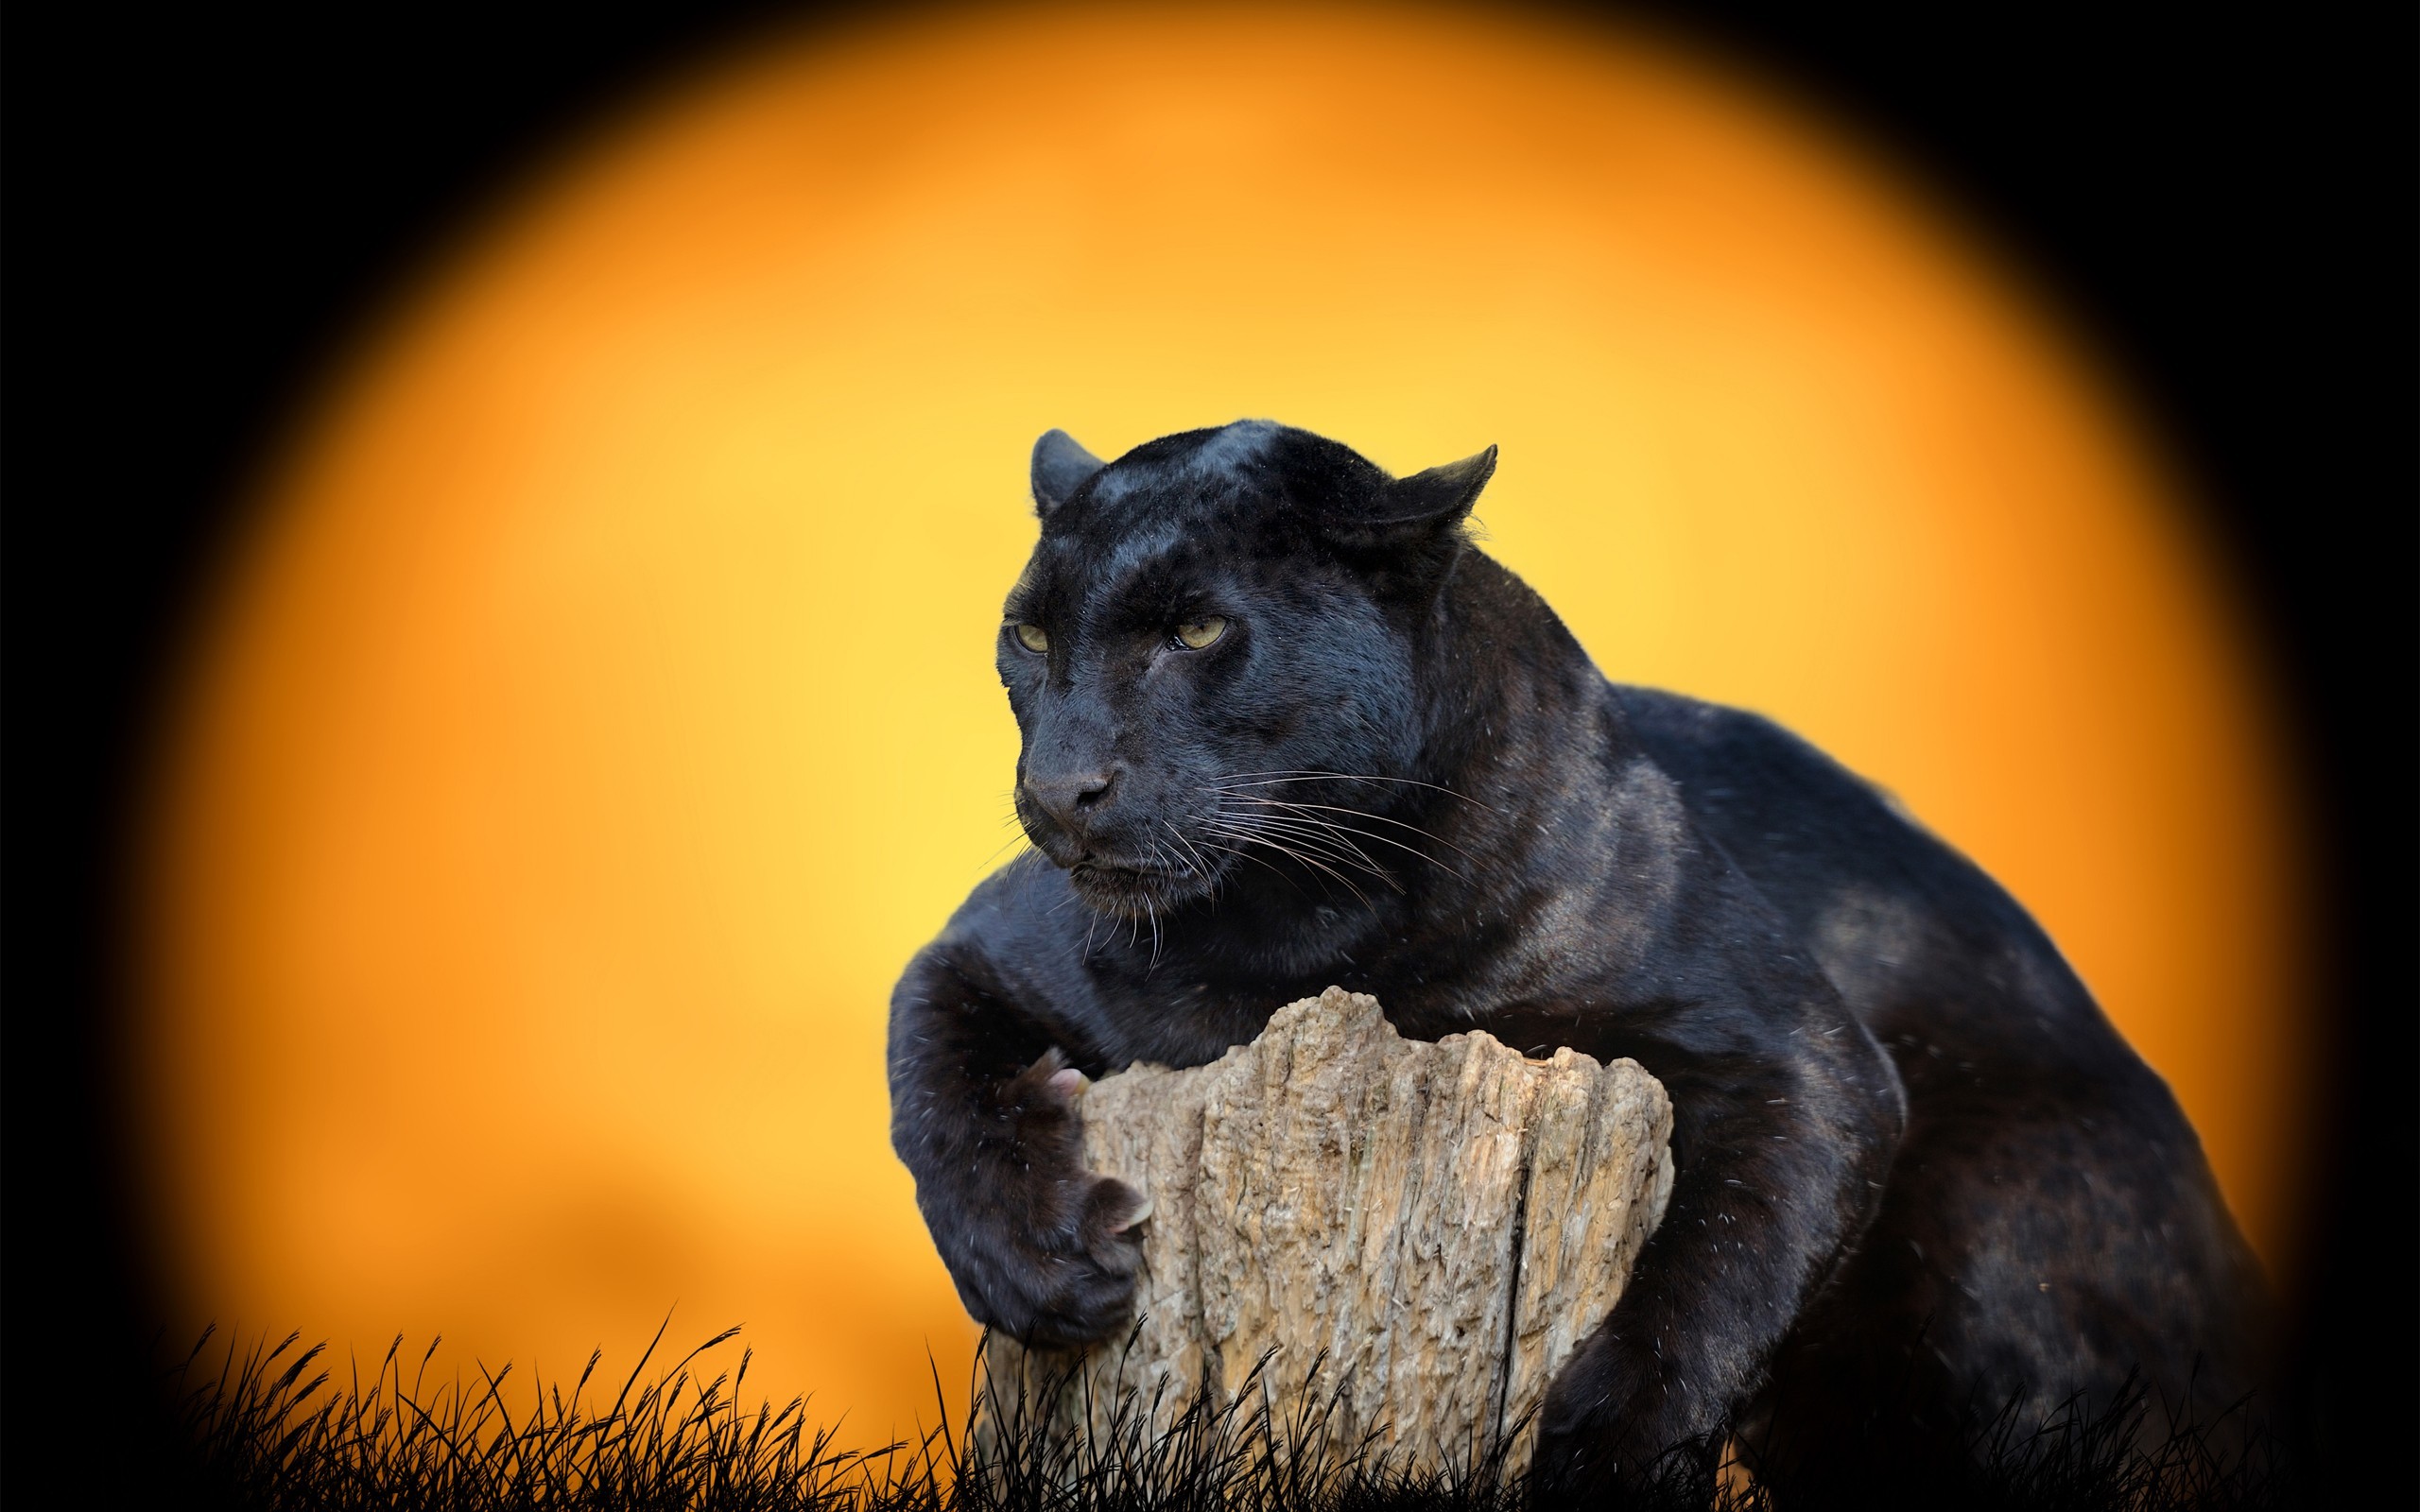 Black jaguar 1080P 2K 4K 5K HD wallpapers free download  Wallpaper Flare